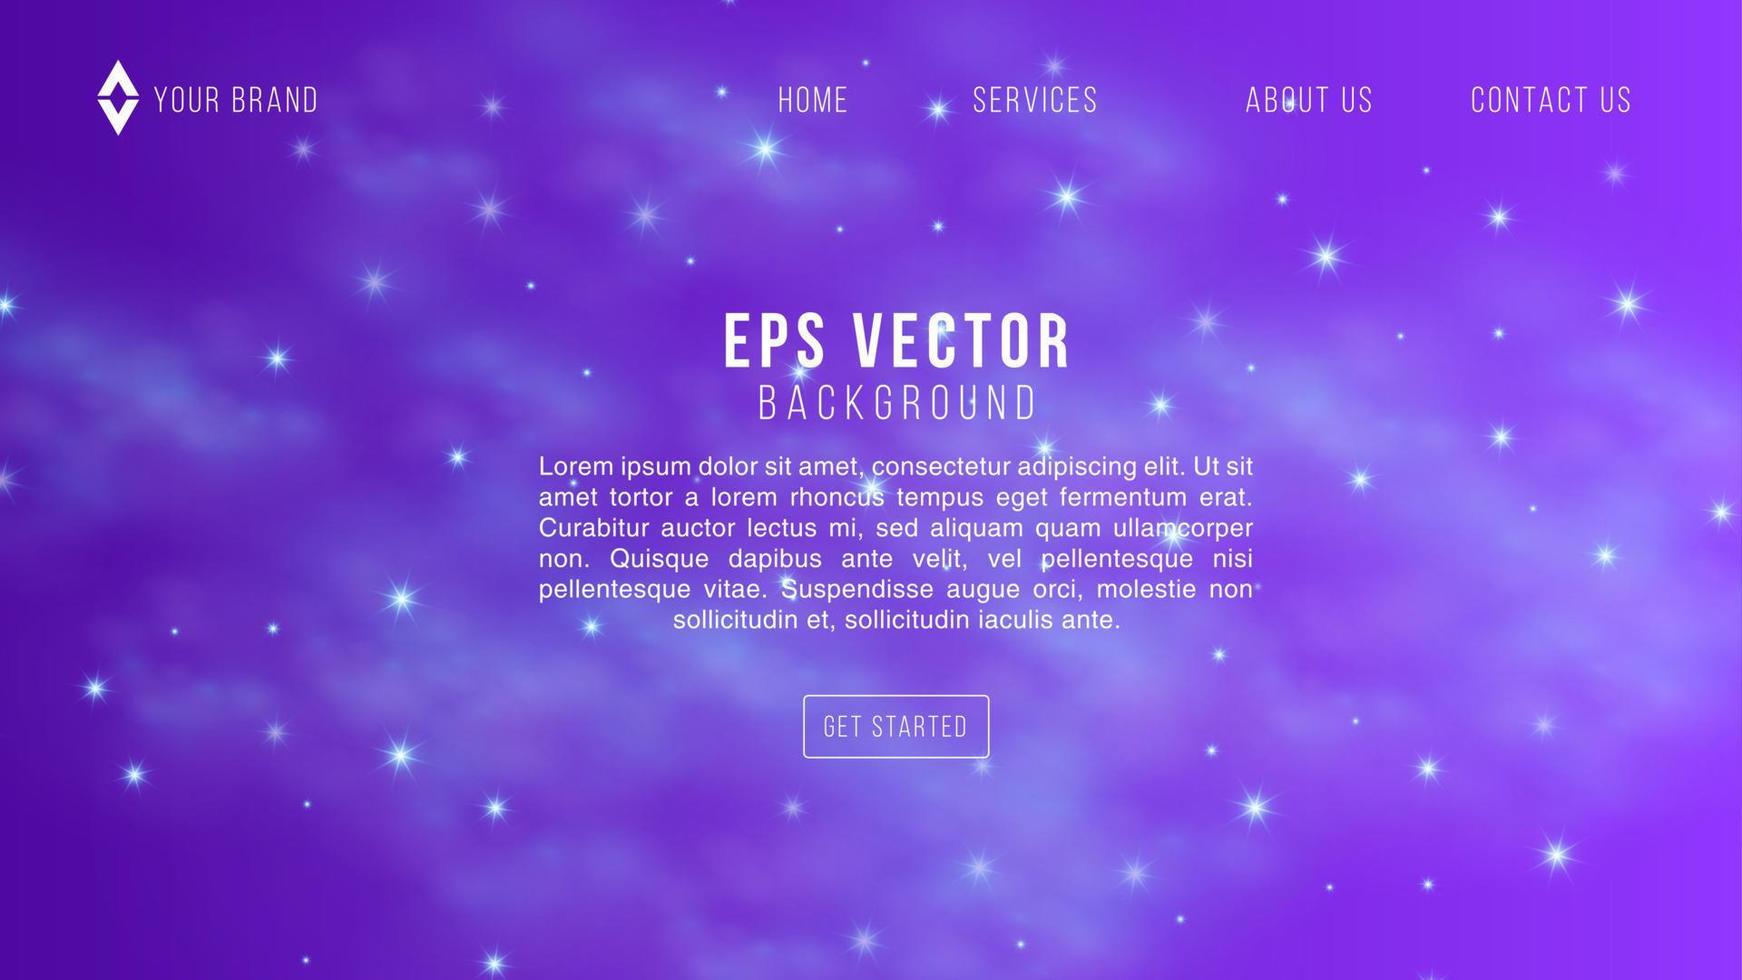 espaço roxo web design astronomia galáxia abstrato eps 10 vetor para site, página inicial, página inicial, página da web